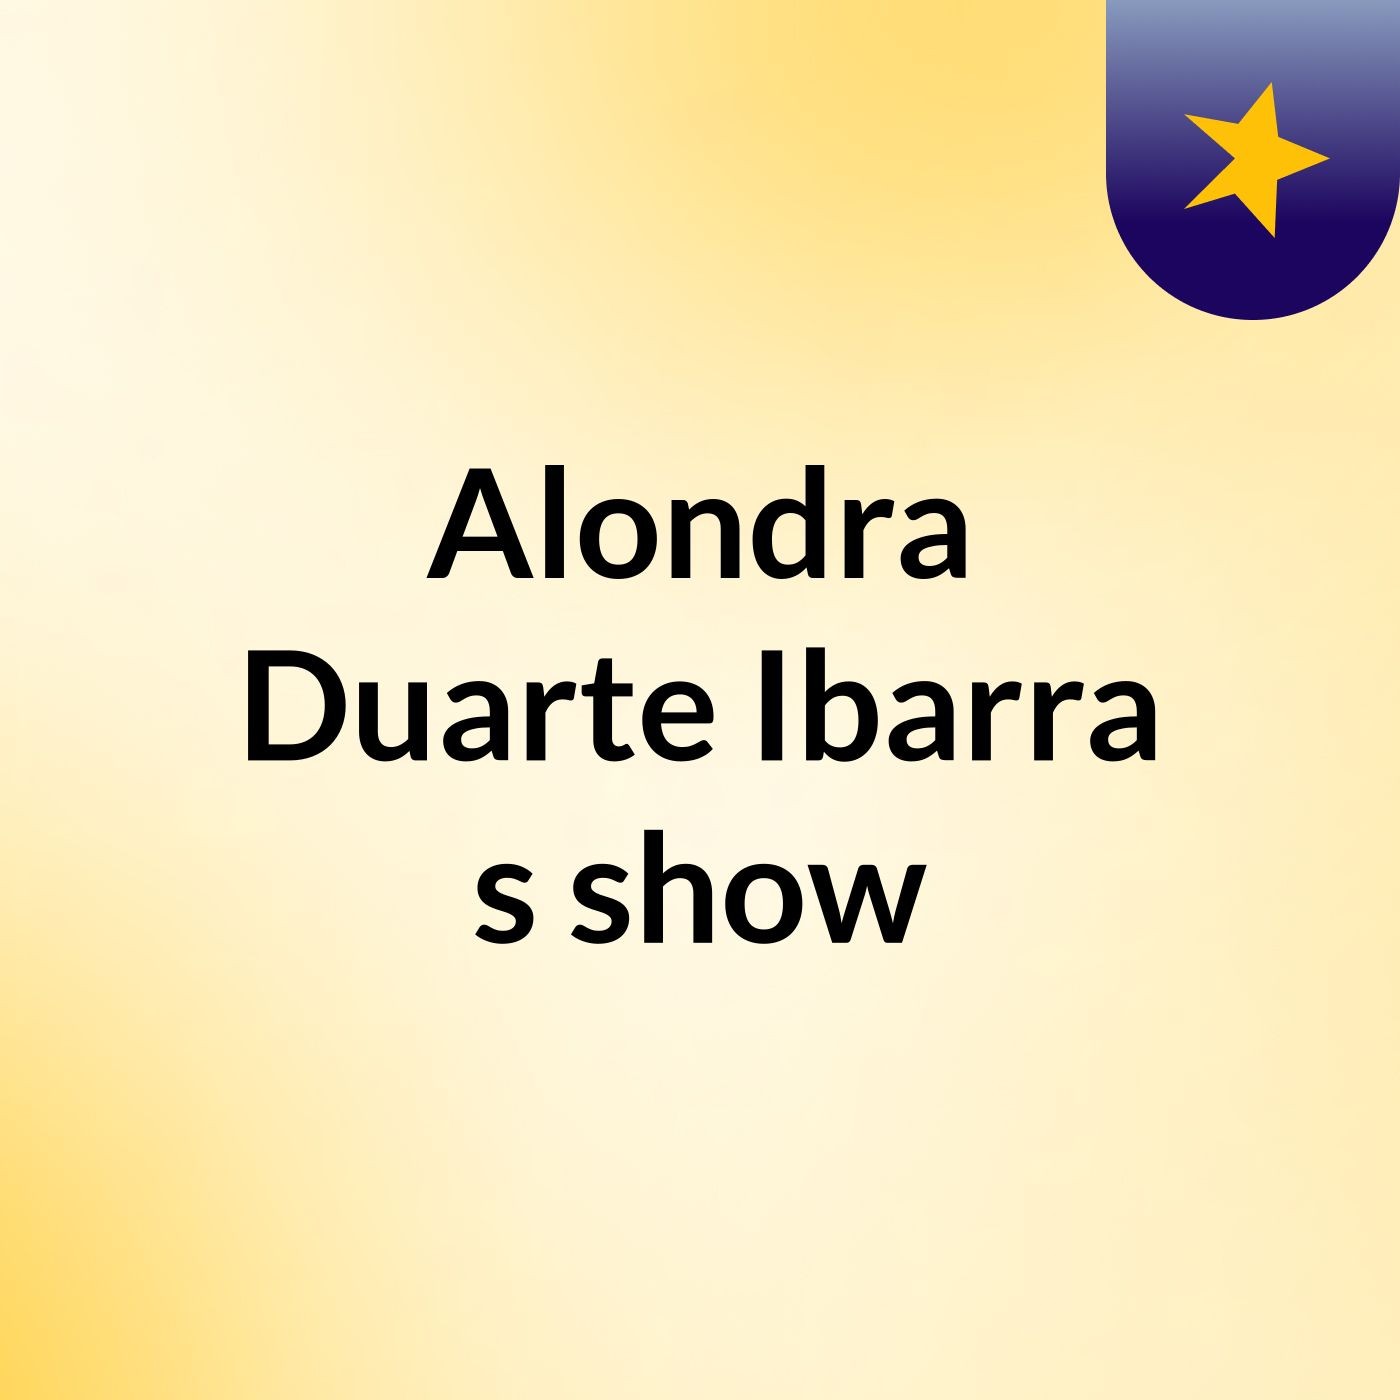 Alondra Duarte Ibarra's show